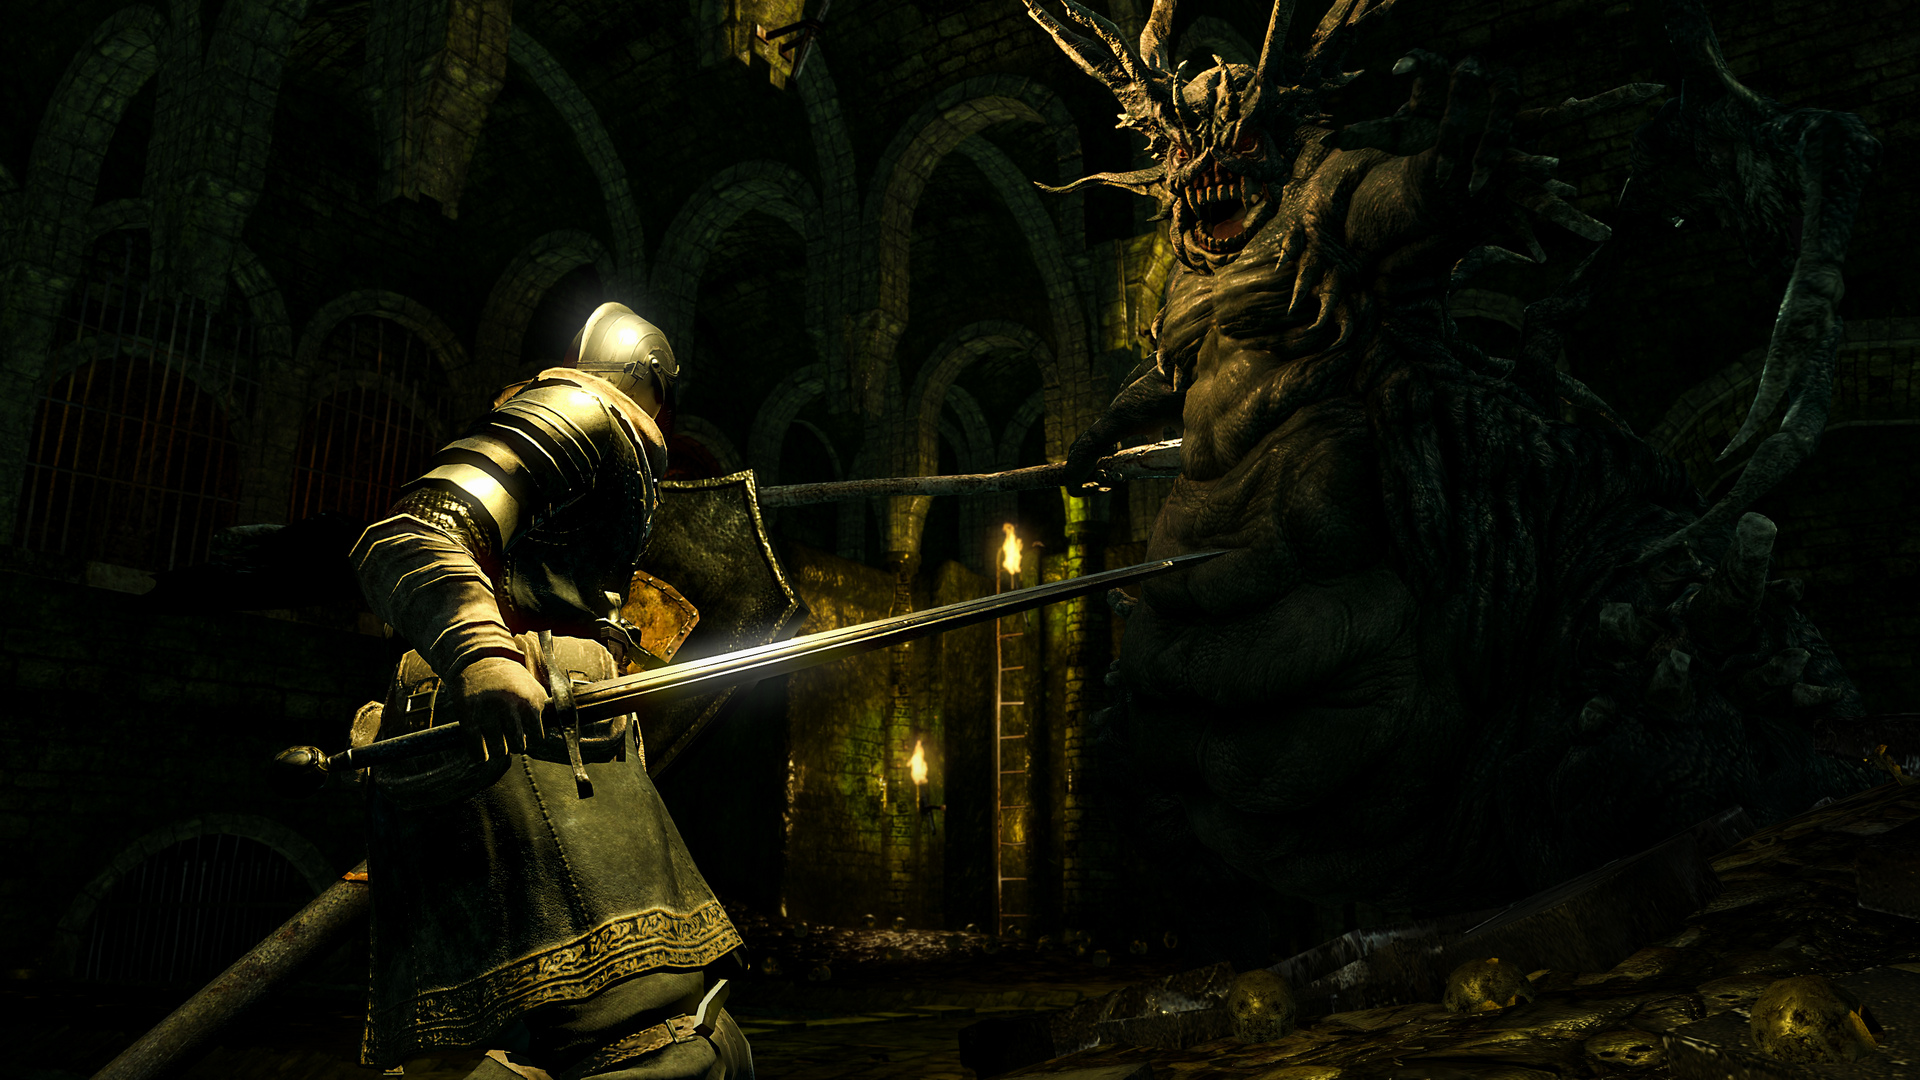 Скриншоты Dark Souls Remastered - картинки, арты, обои PLAYER ONE изображен...